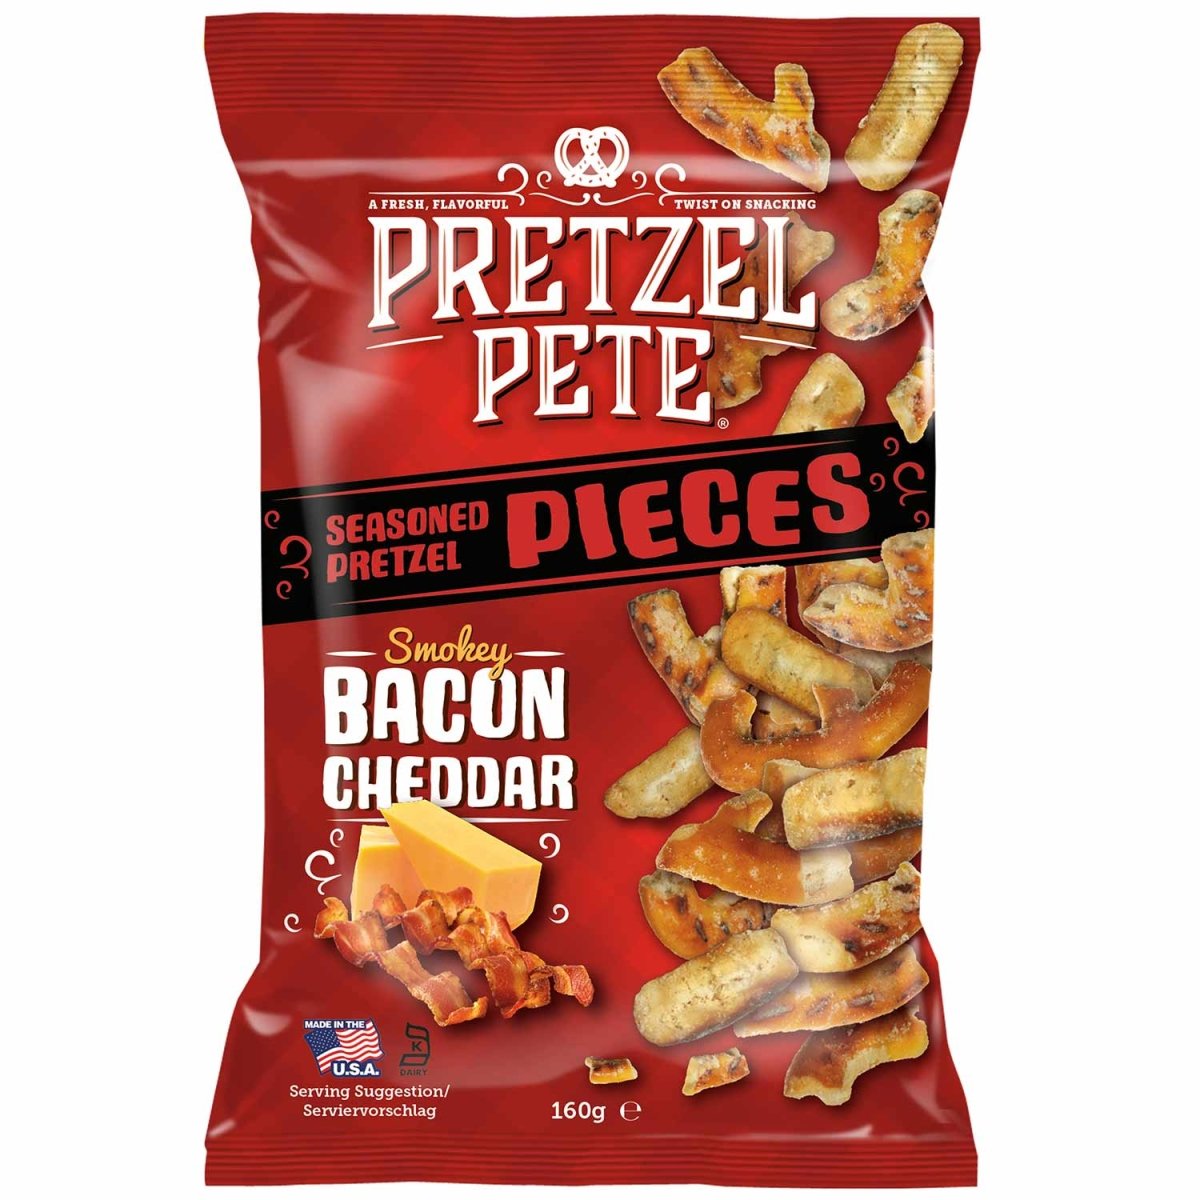 Pretzel Pete Smokey Bacon Cheddar 160g - Candy Mail UK